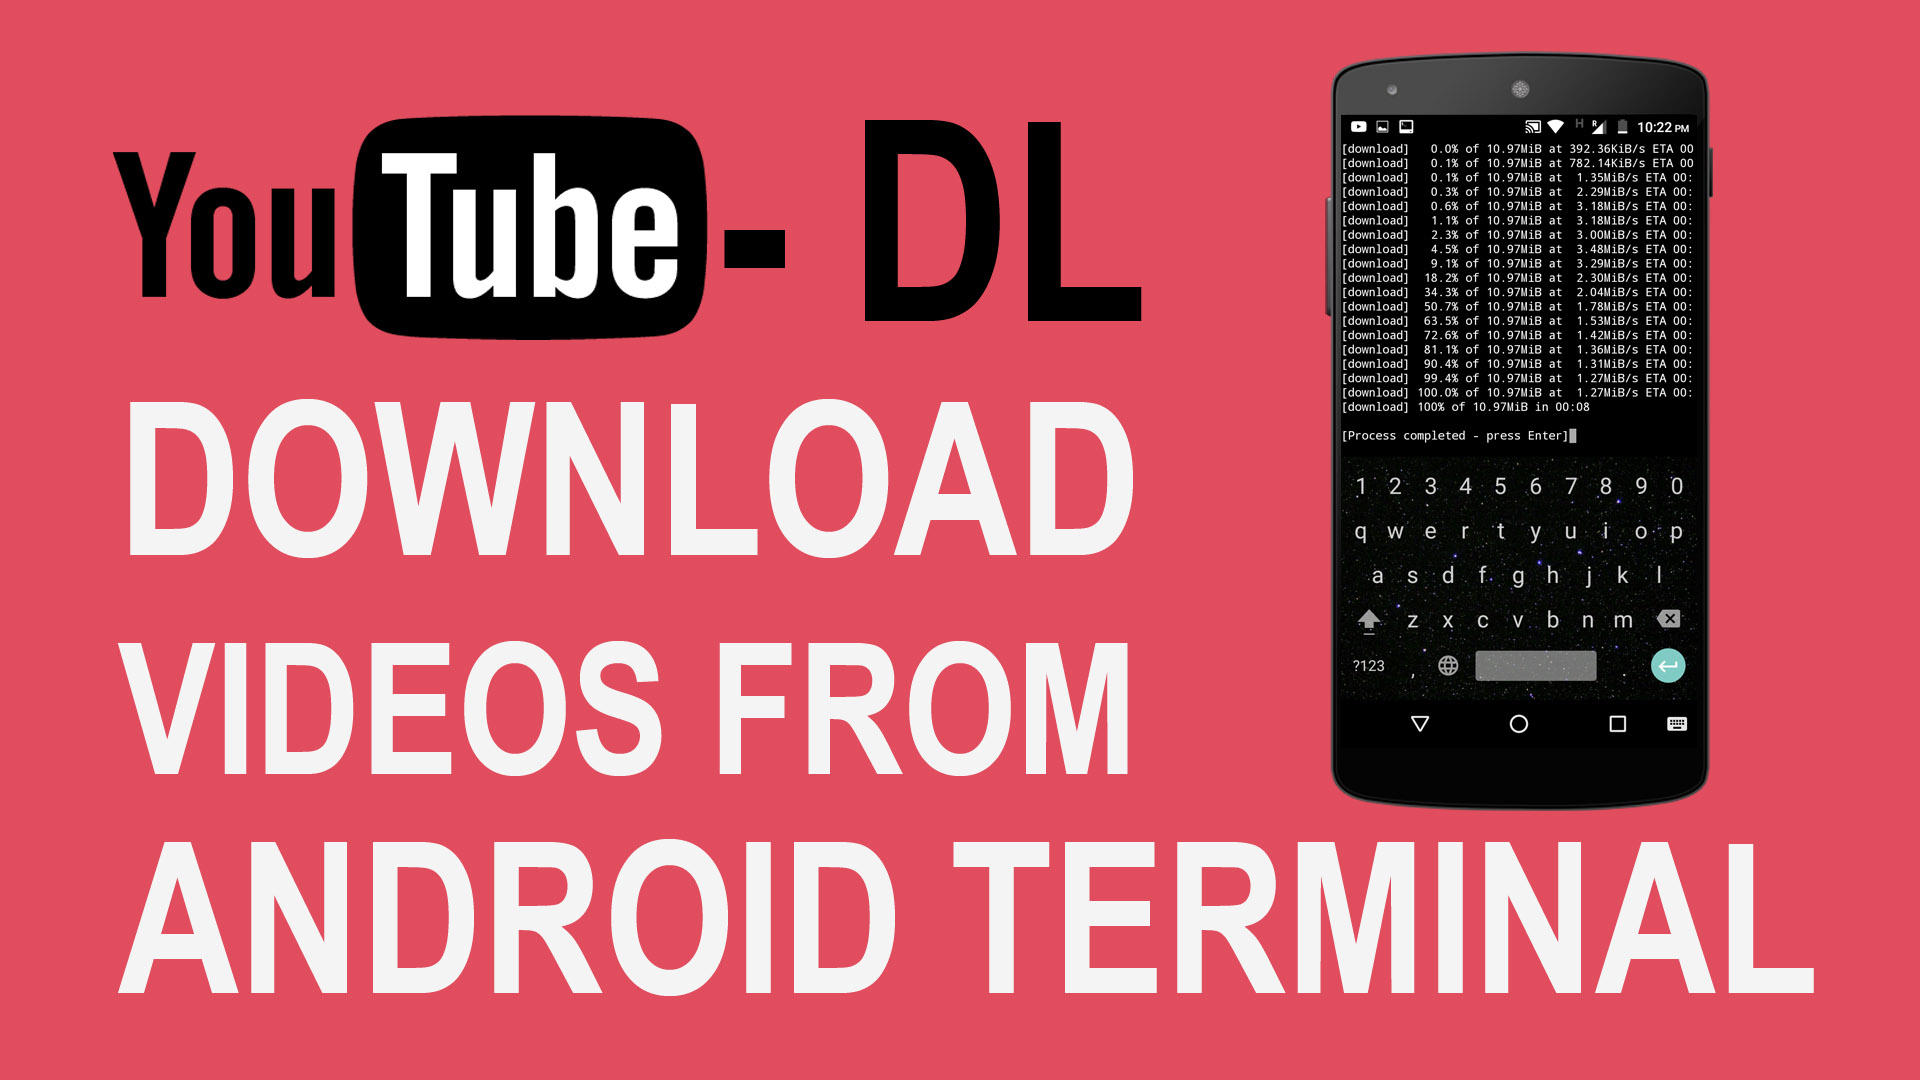 Descarga cualquier videos en Internet con terminal Android